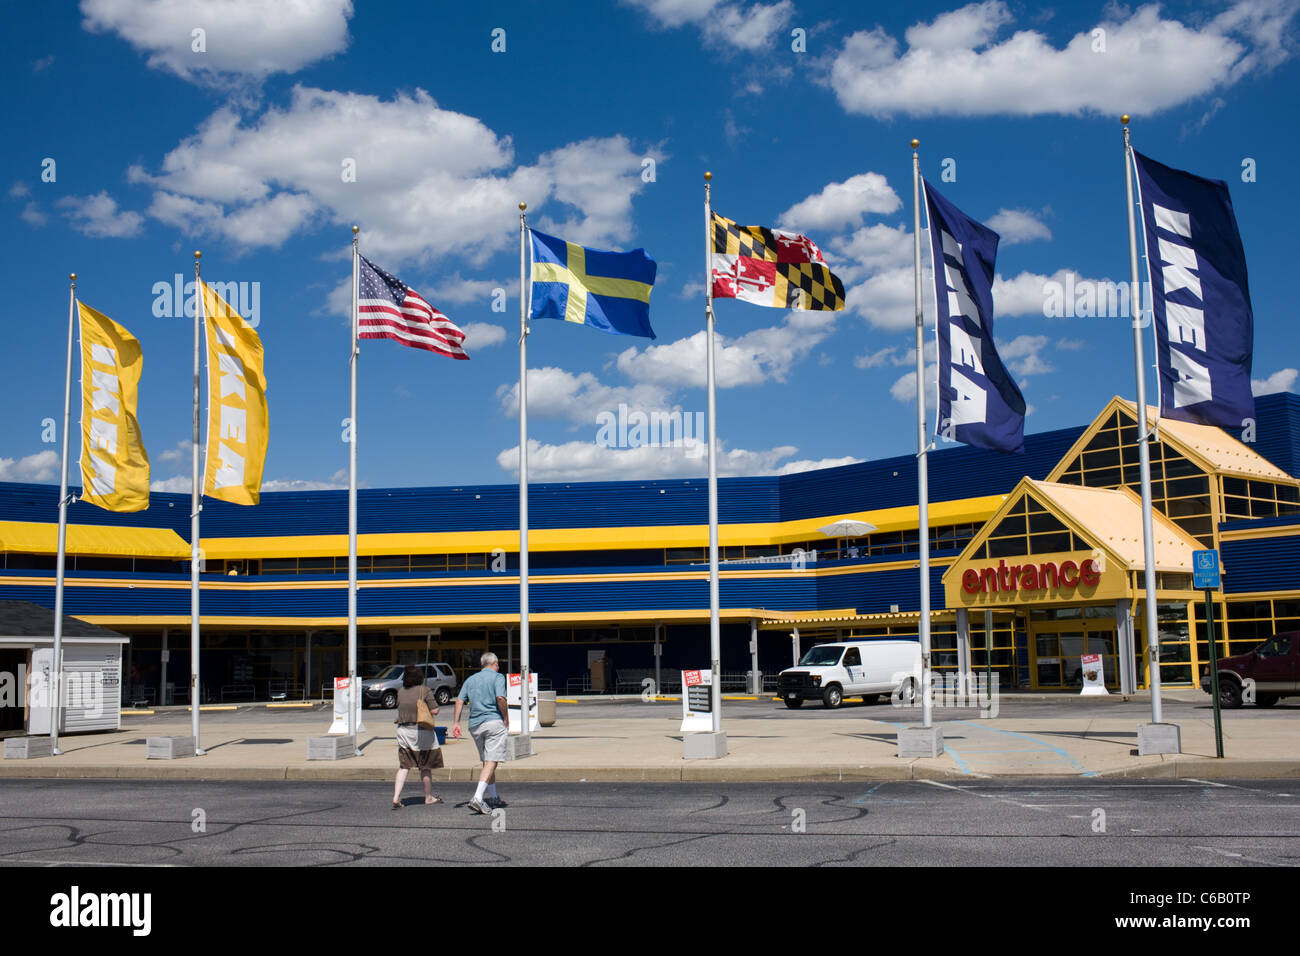 IKEA Store near Baltimore, Maryland, USA Stock Photo - Alamy